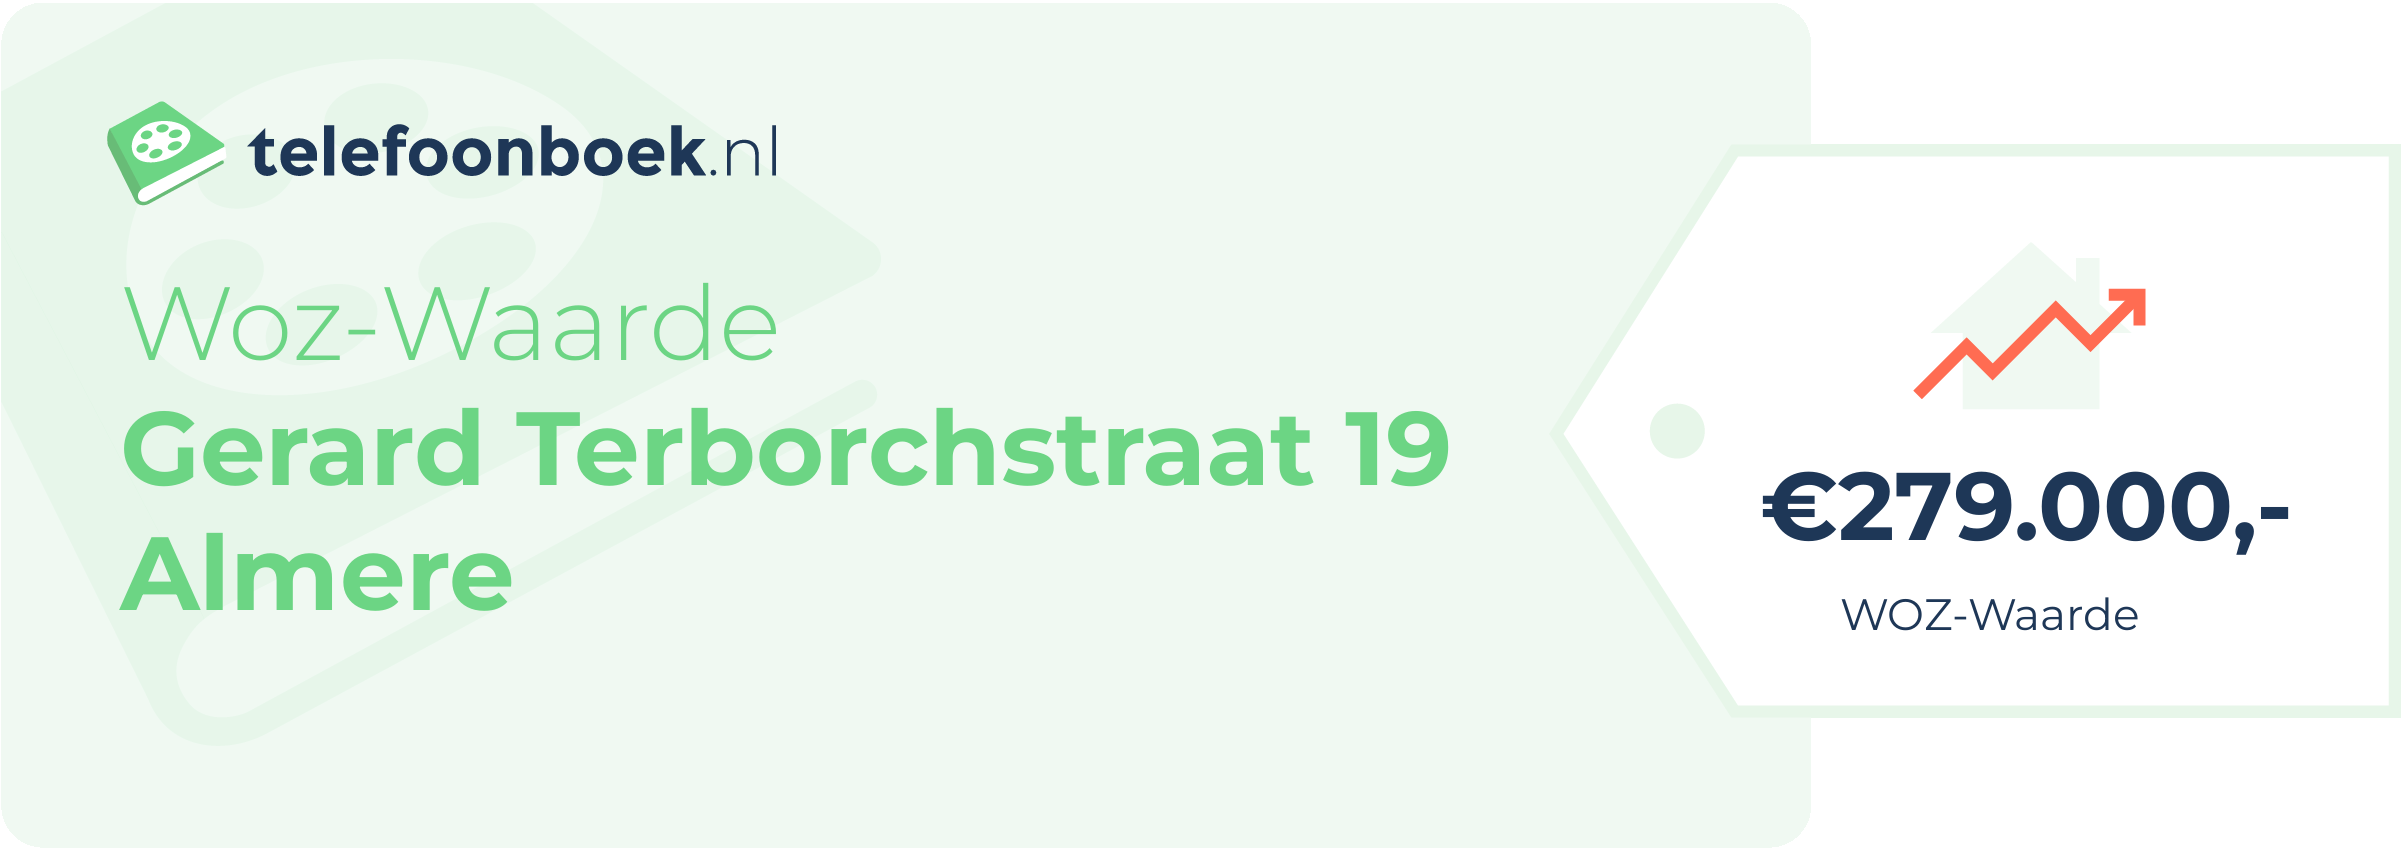 WOZ-waarde Gerard Terborchstraat 19 Almere